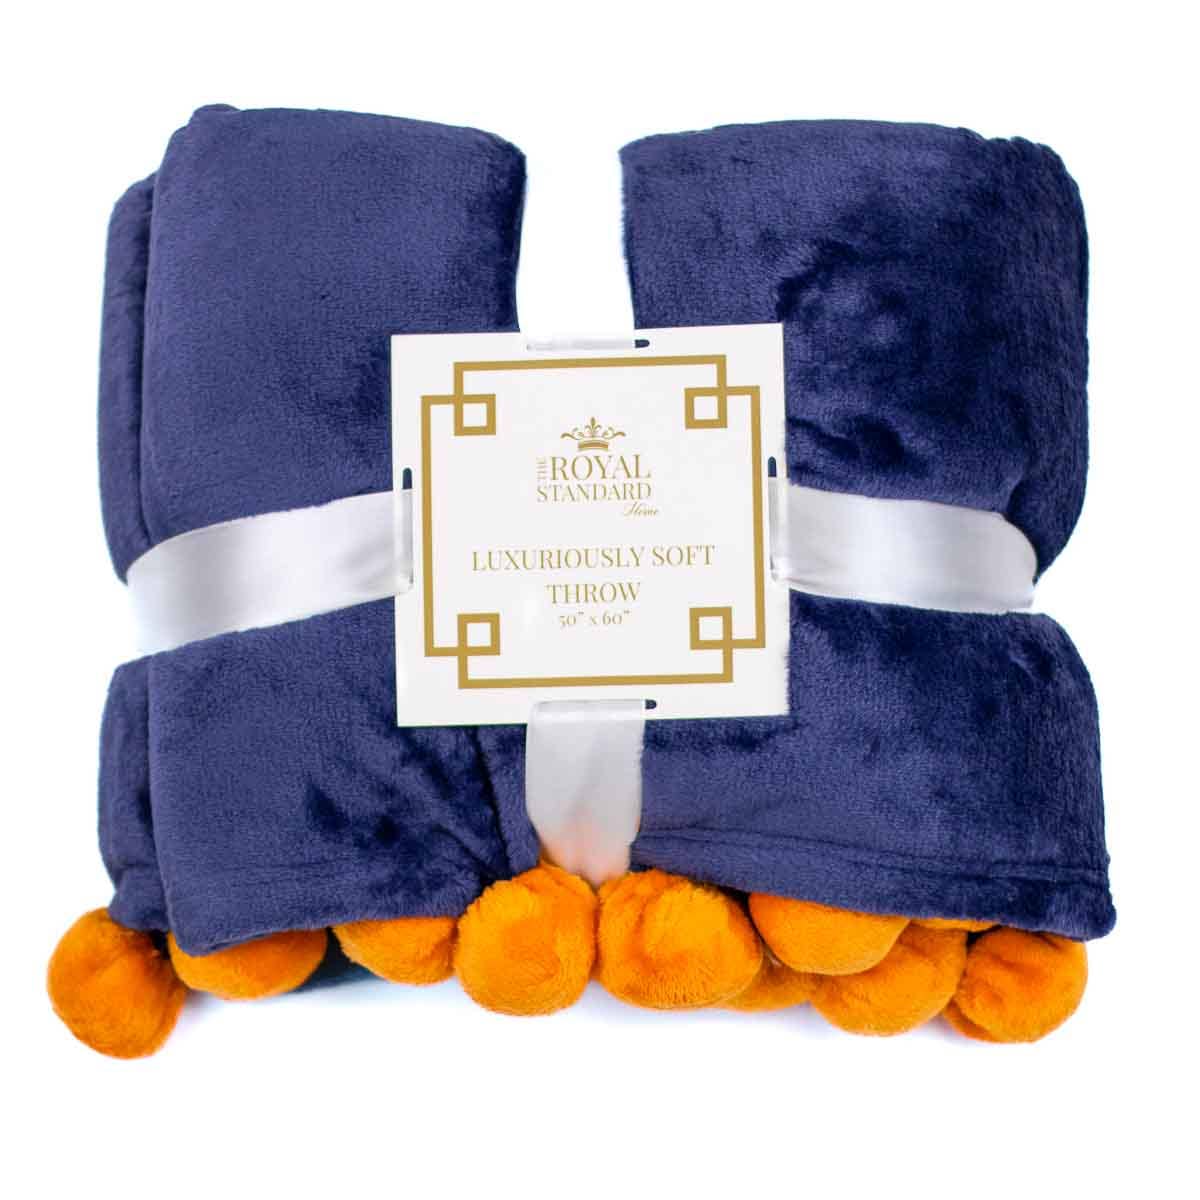 The Royal Standard- Cozy Pom Pom Throw   Blue/Orange   50x60